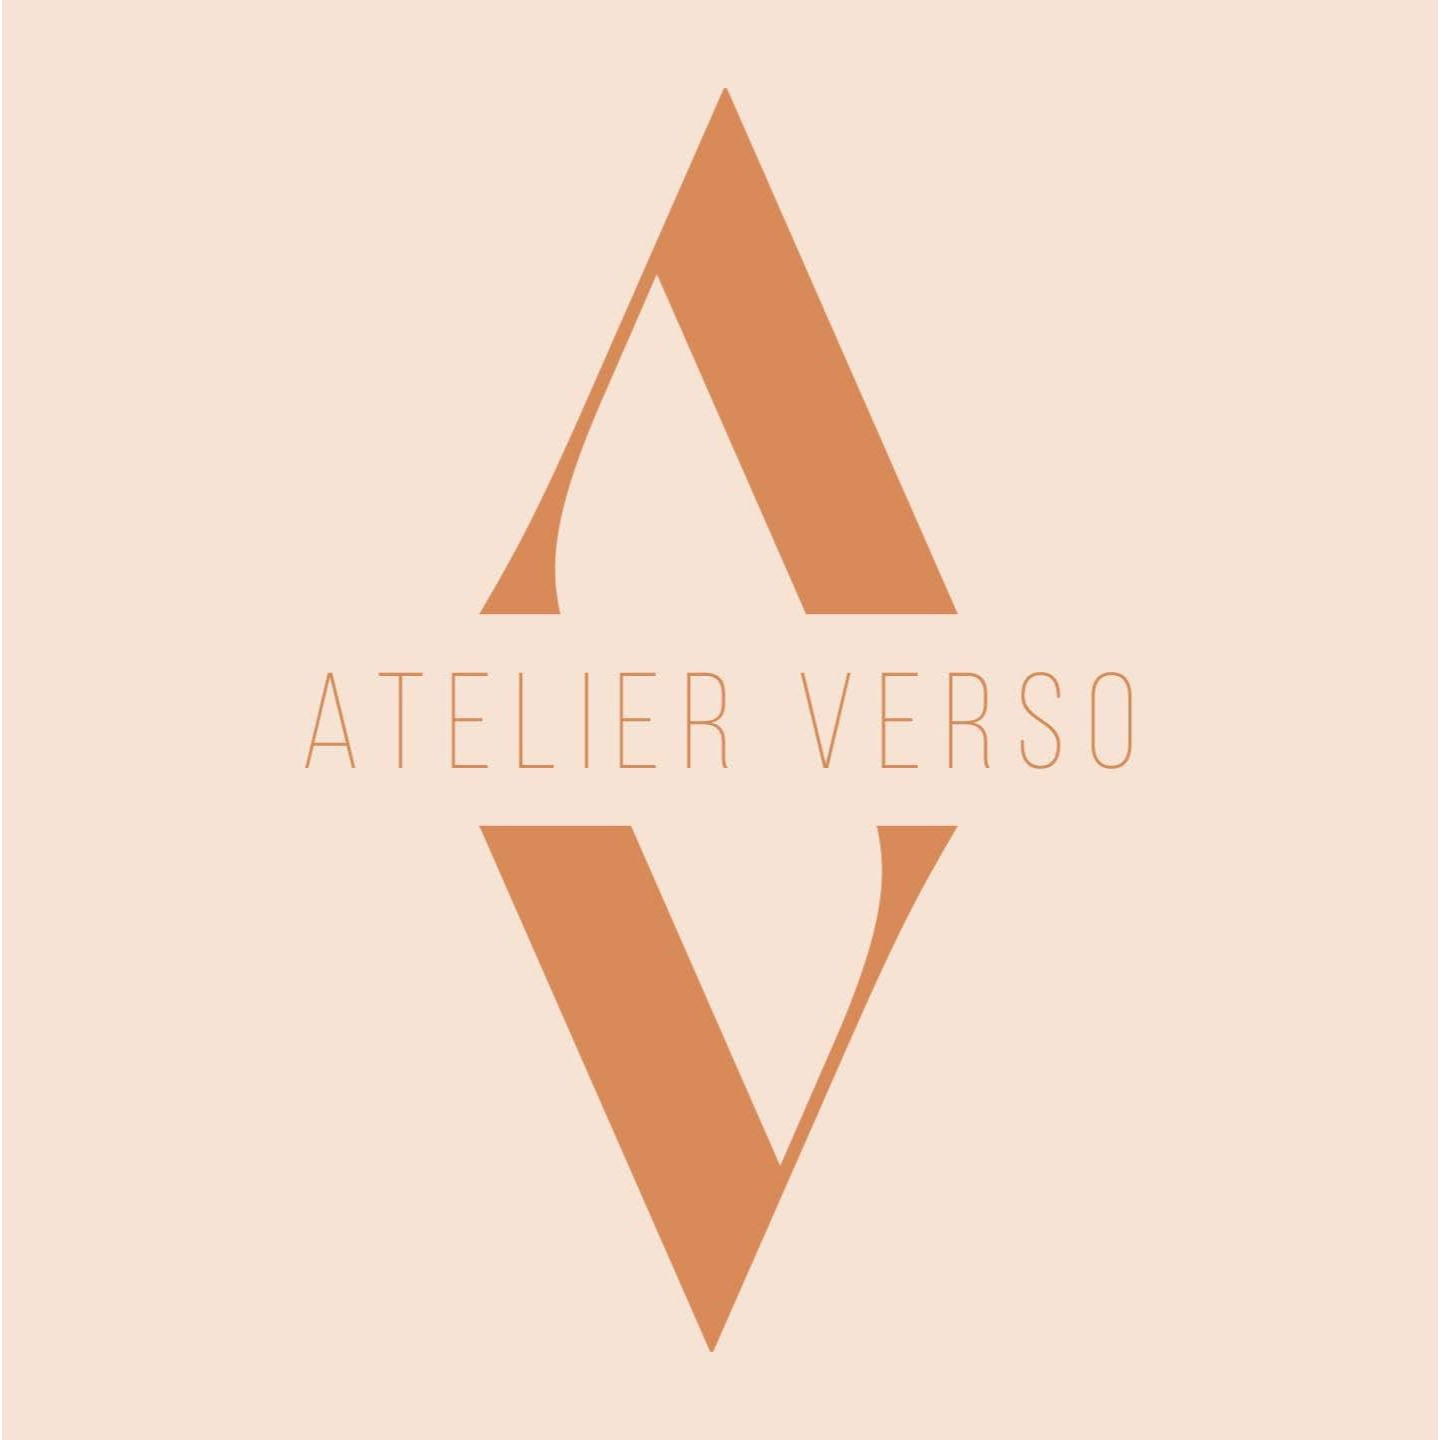 Atelier Verso